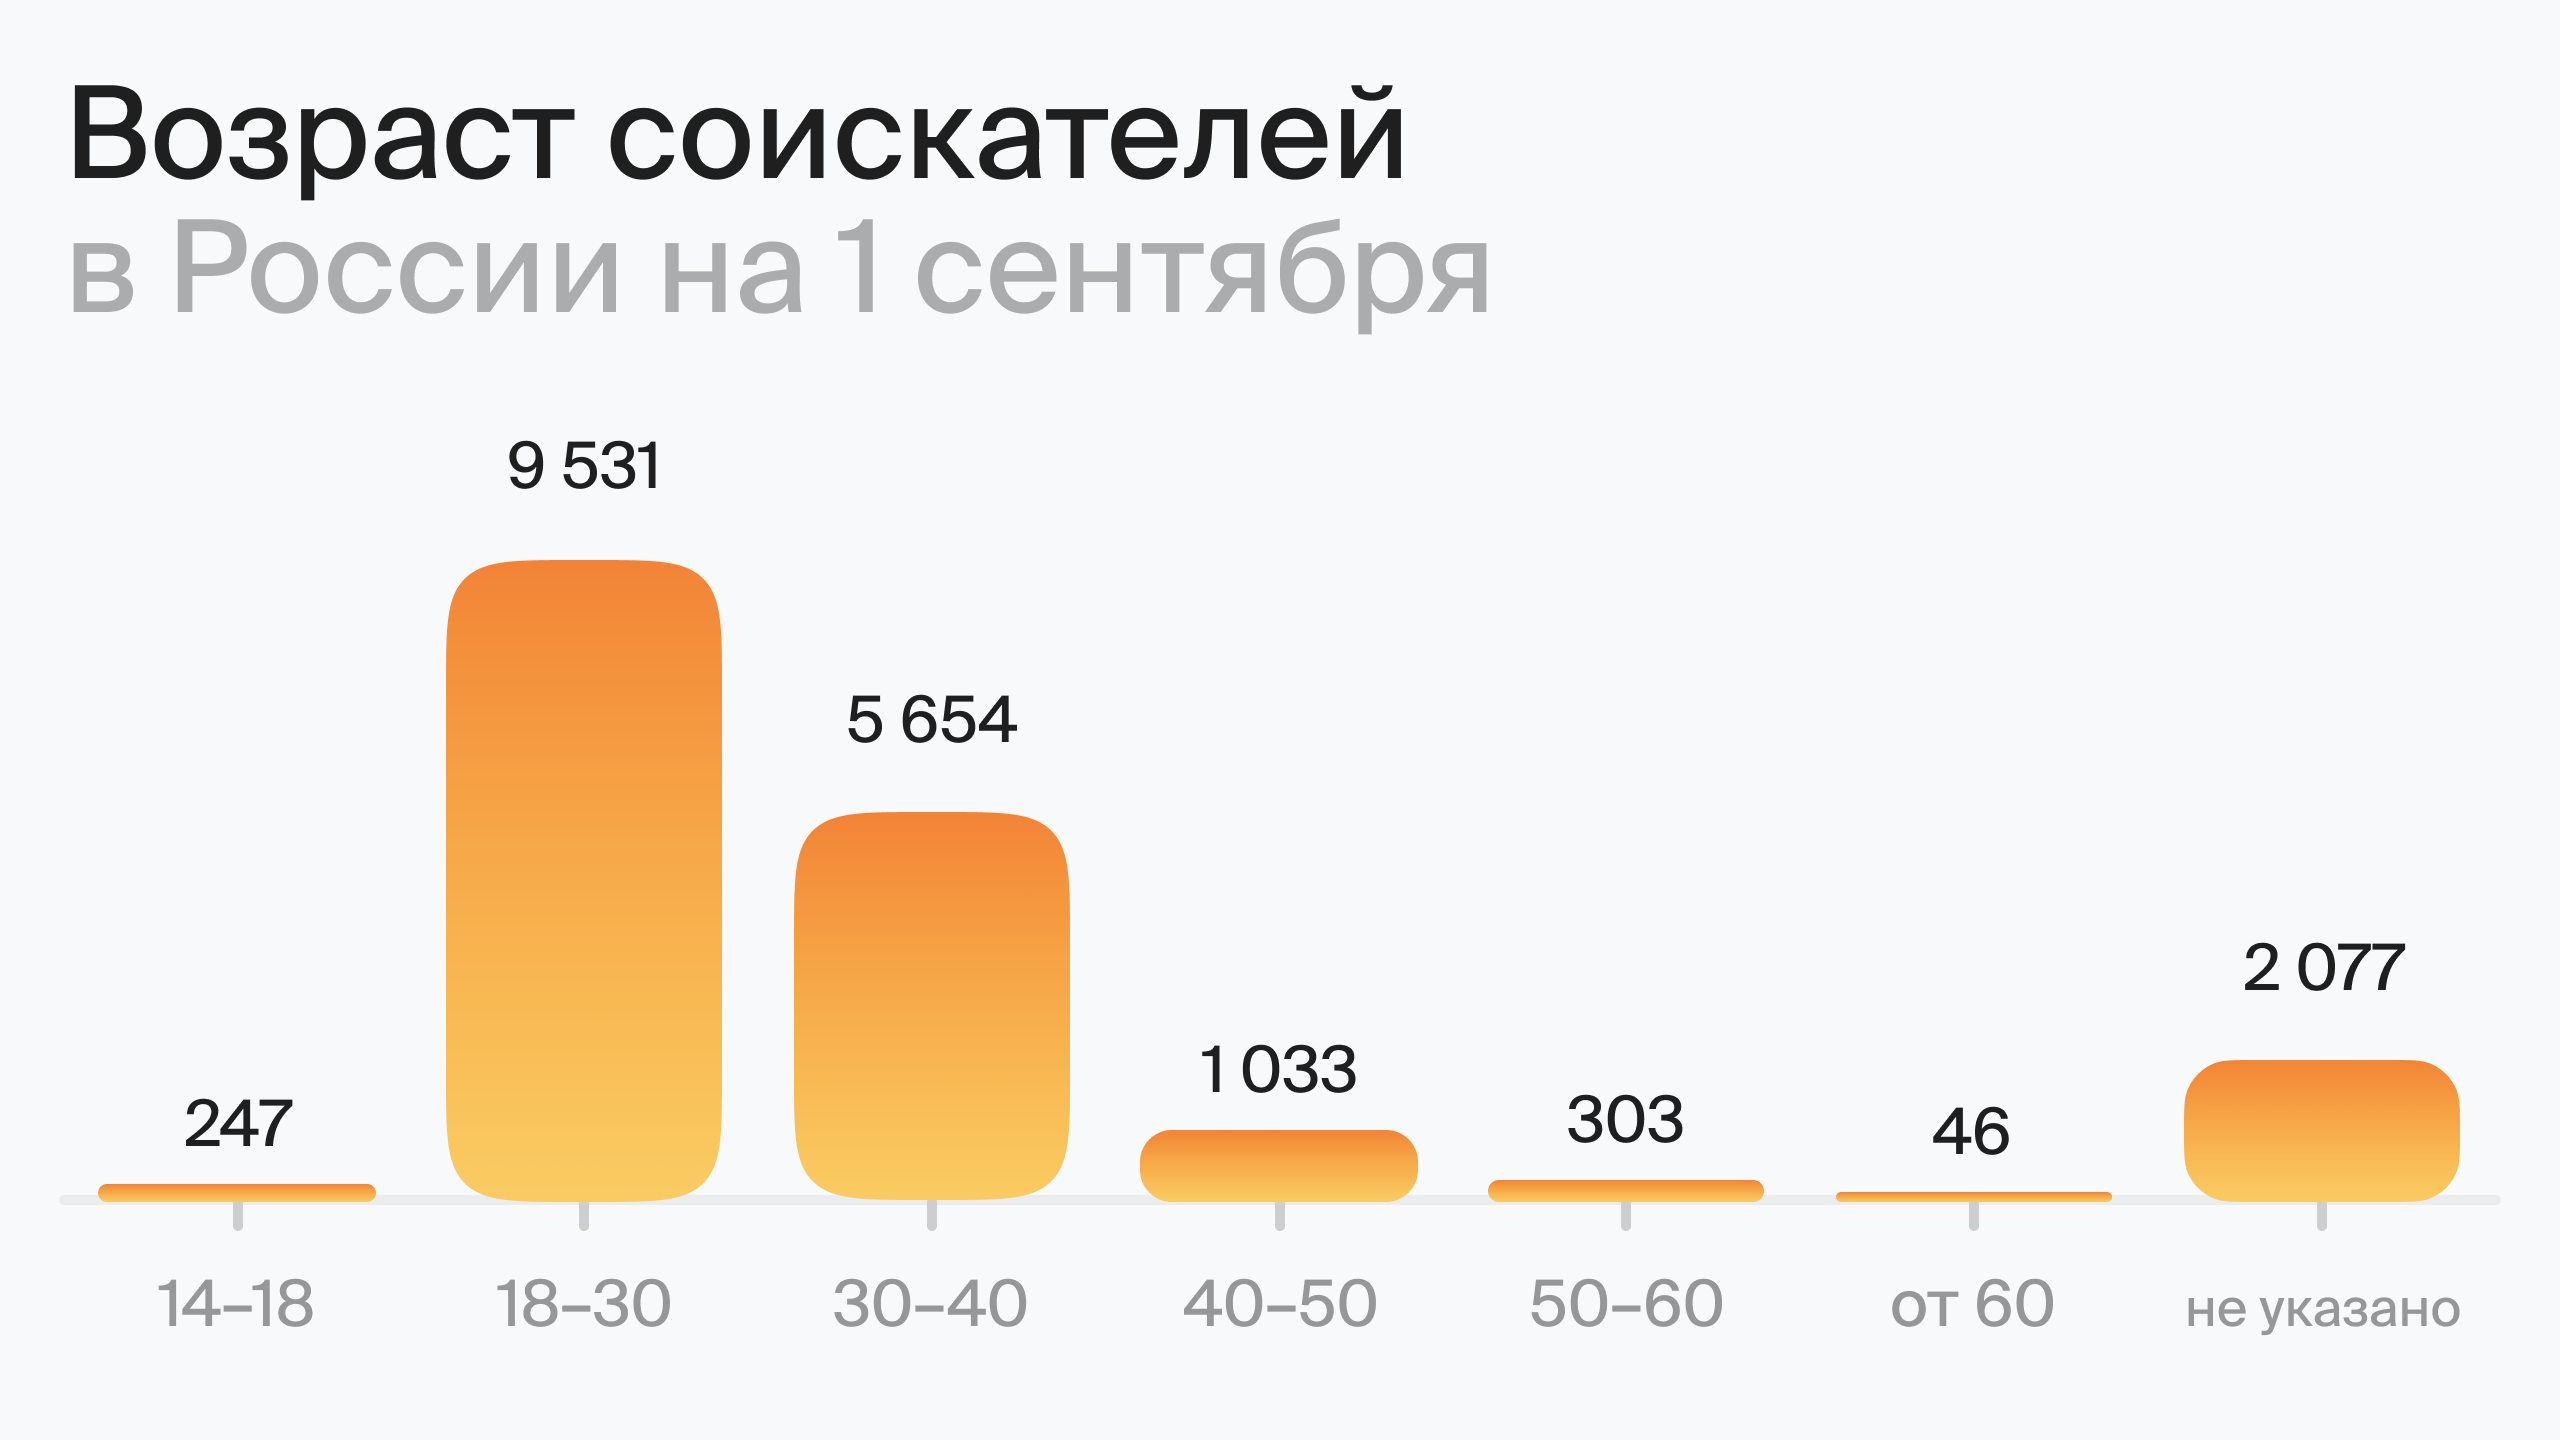 Возраст соискателей в России на 1 сентября (по данным hh.ru)